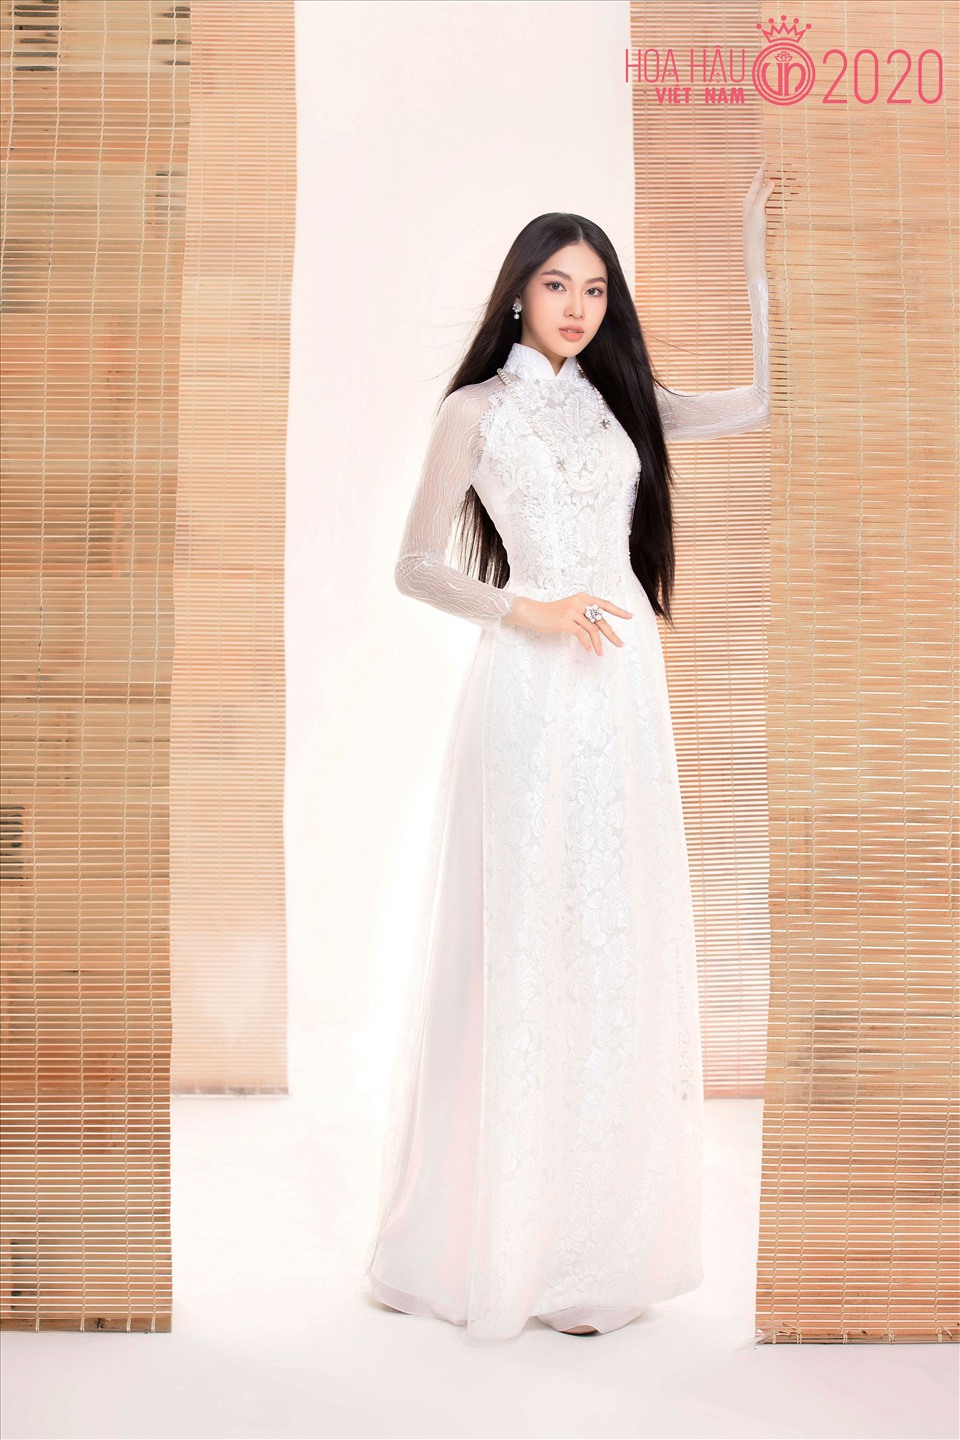 Từng là người mẫu, quay quảng cáo cho các nhãn hàng nhưng Hoa hậu Việt Nam 2020 là đấu trường nhan sắc đầu tiên cô tham dự và nhận được sự chú ý ngay từ những ngày đầu tham dự. Ảnh: HHVN.